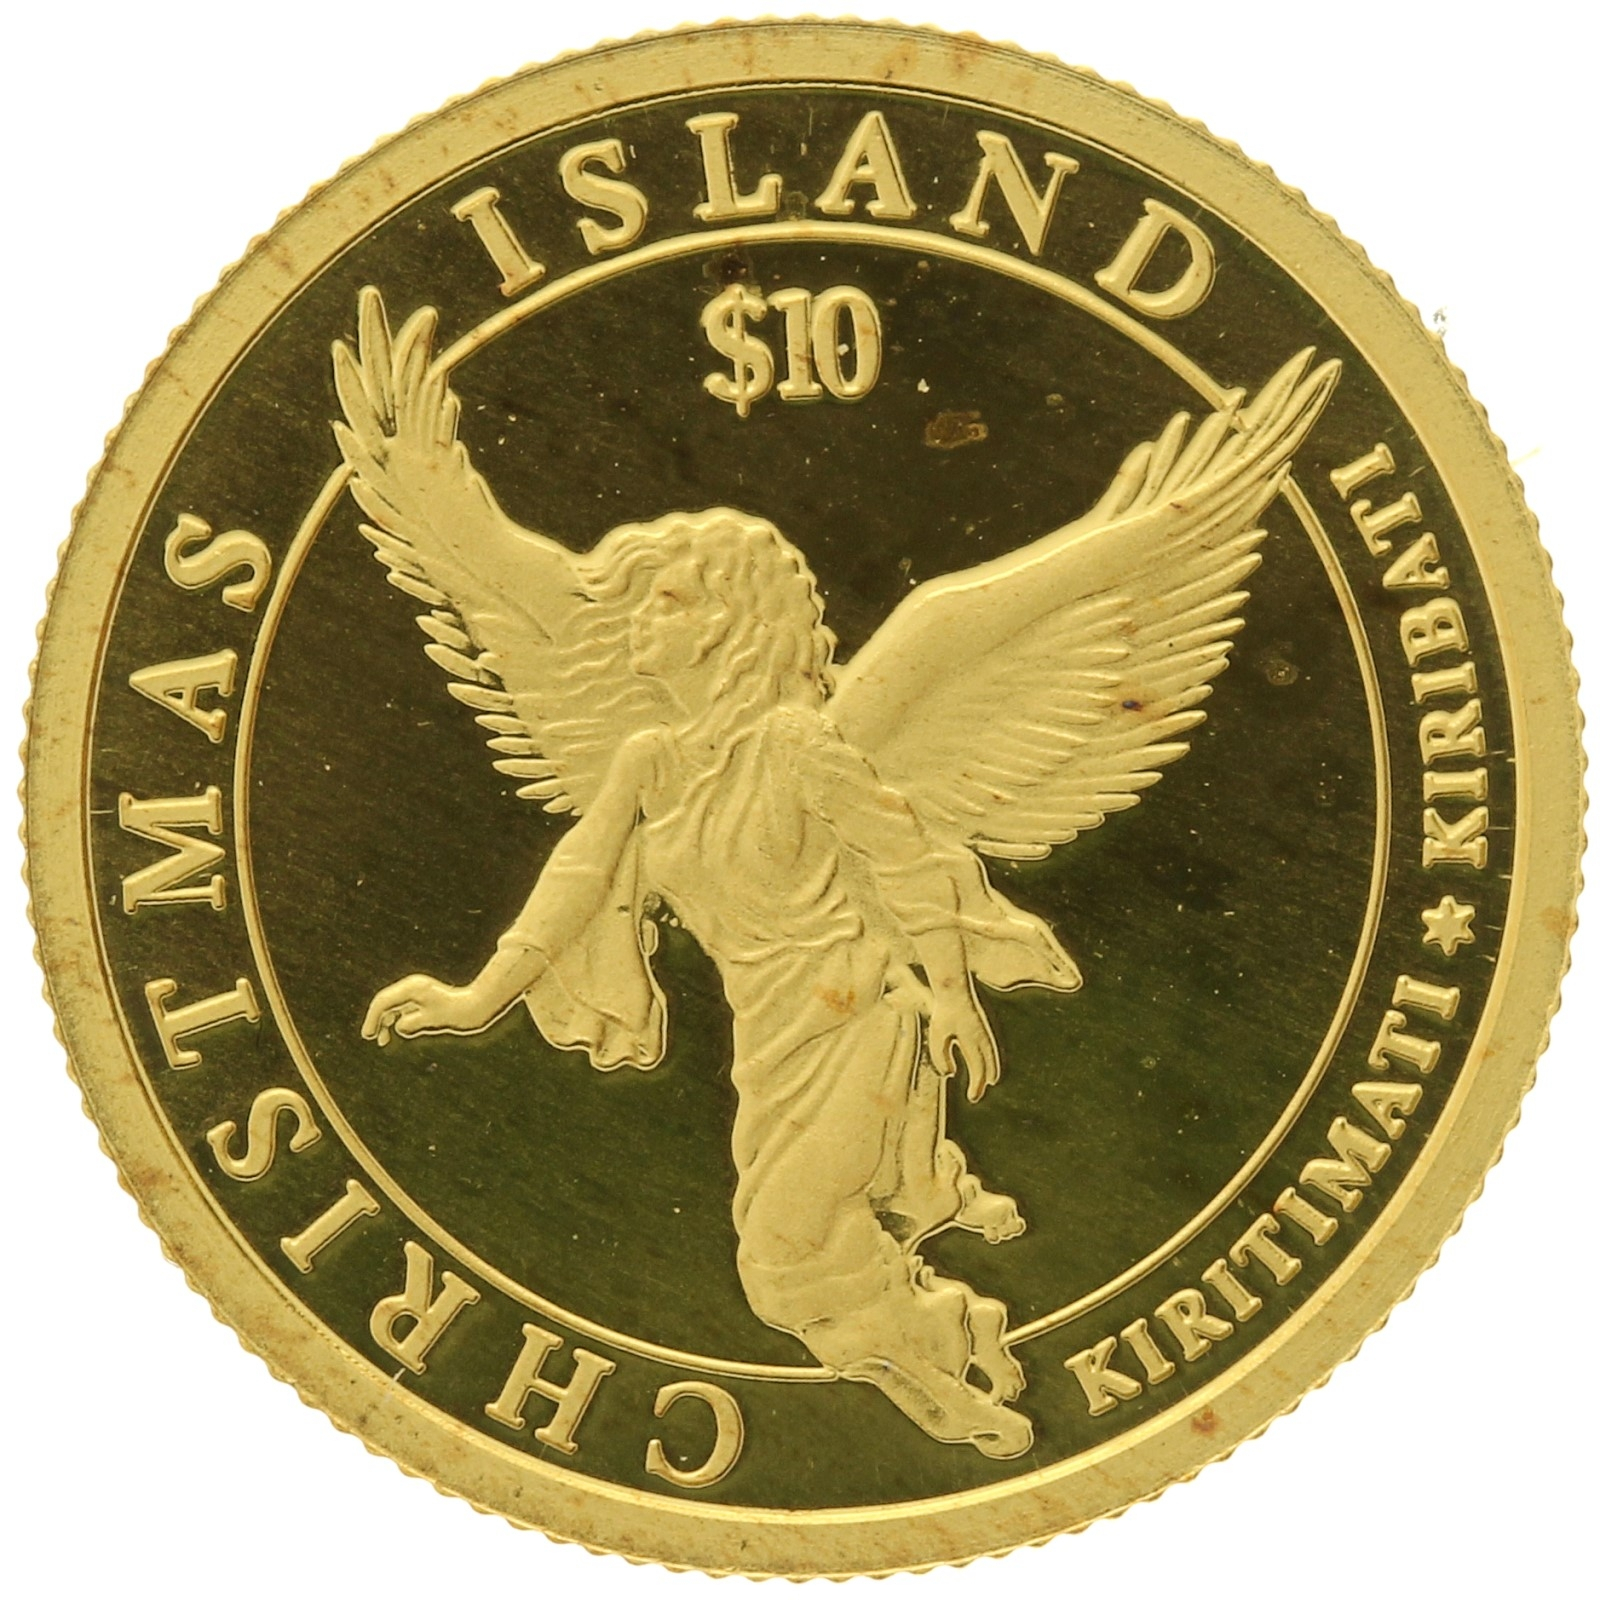 Kiribati - 10 dollars - 2006 - Christmas Island Angel - 1/25oz 